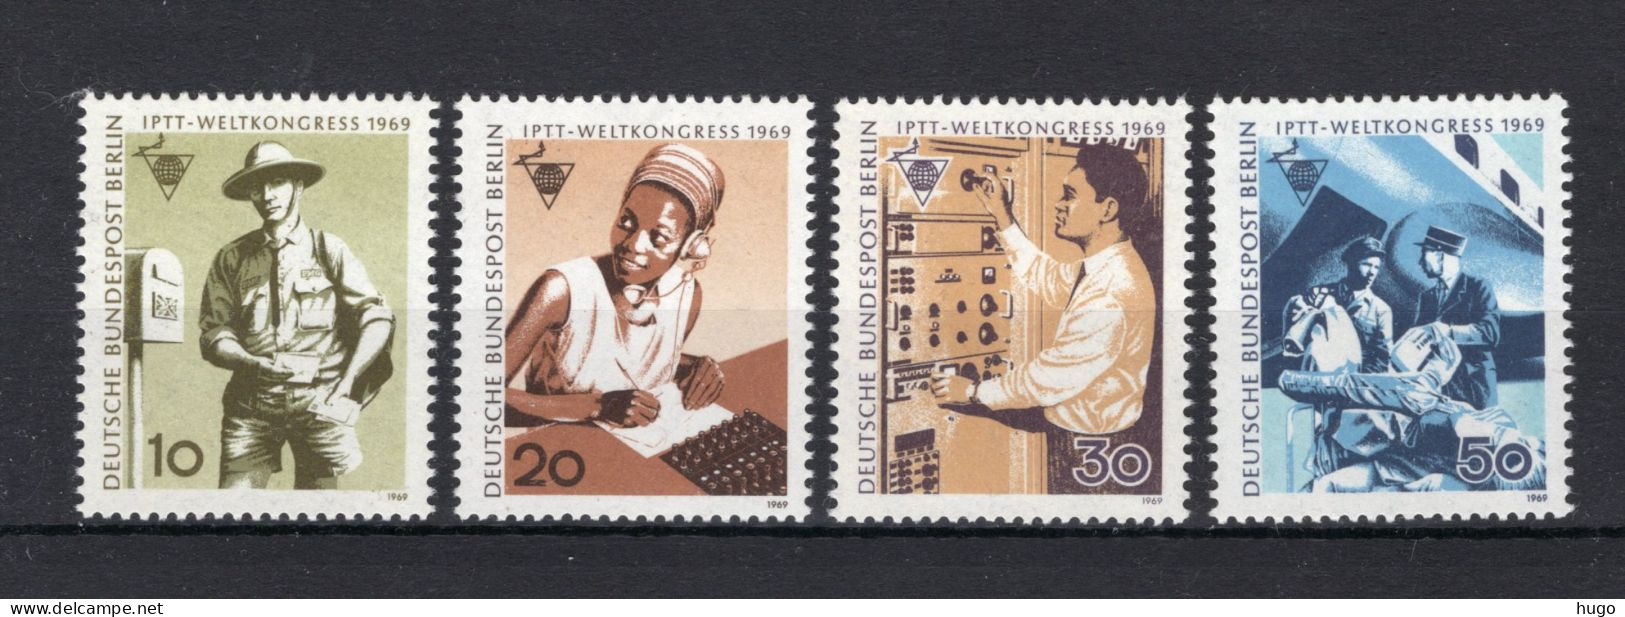 DUITSLAND BERLIN Yt. 314/317 MNH 1969 - Unused Stamps